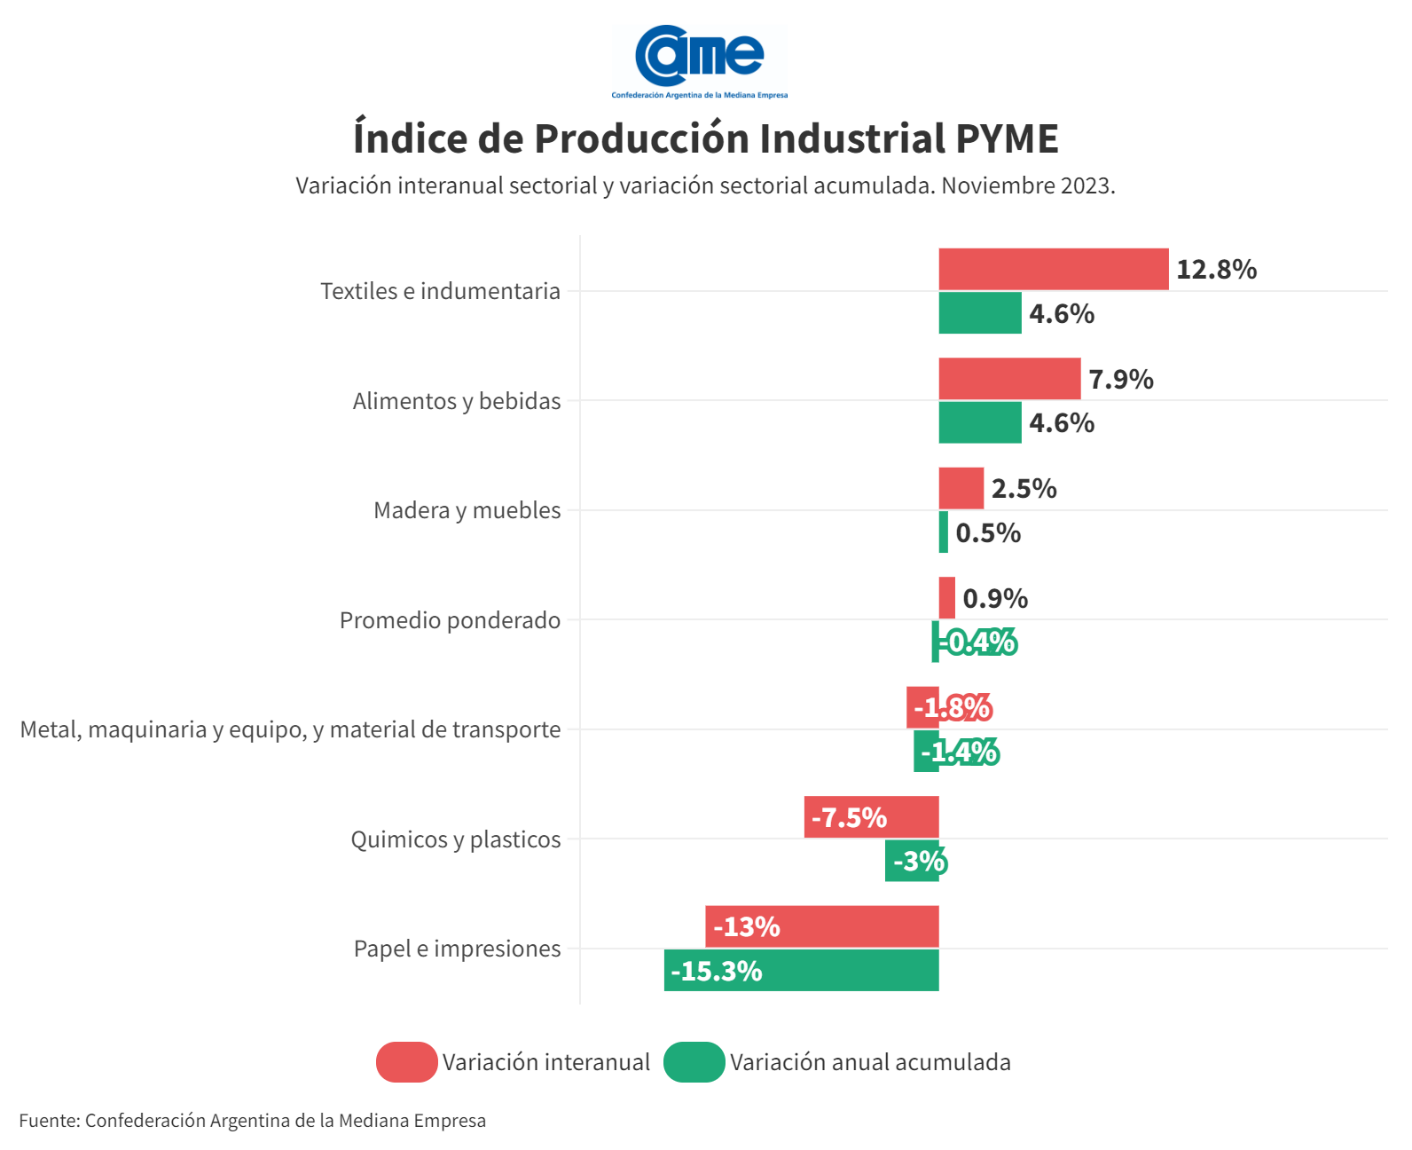 La industria pyme subió 0,9% interanual en noviembre, aunque acumula una caída de 0,4 en el año